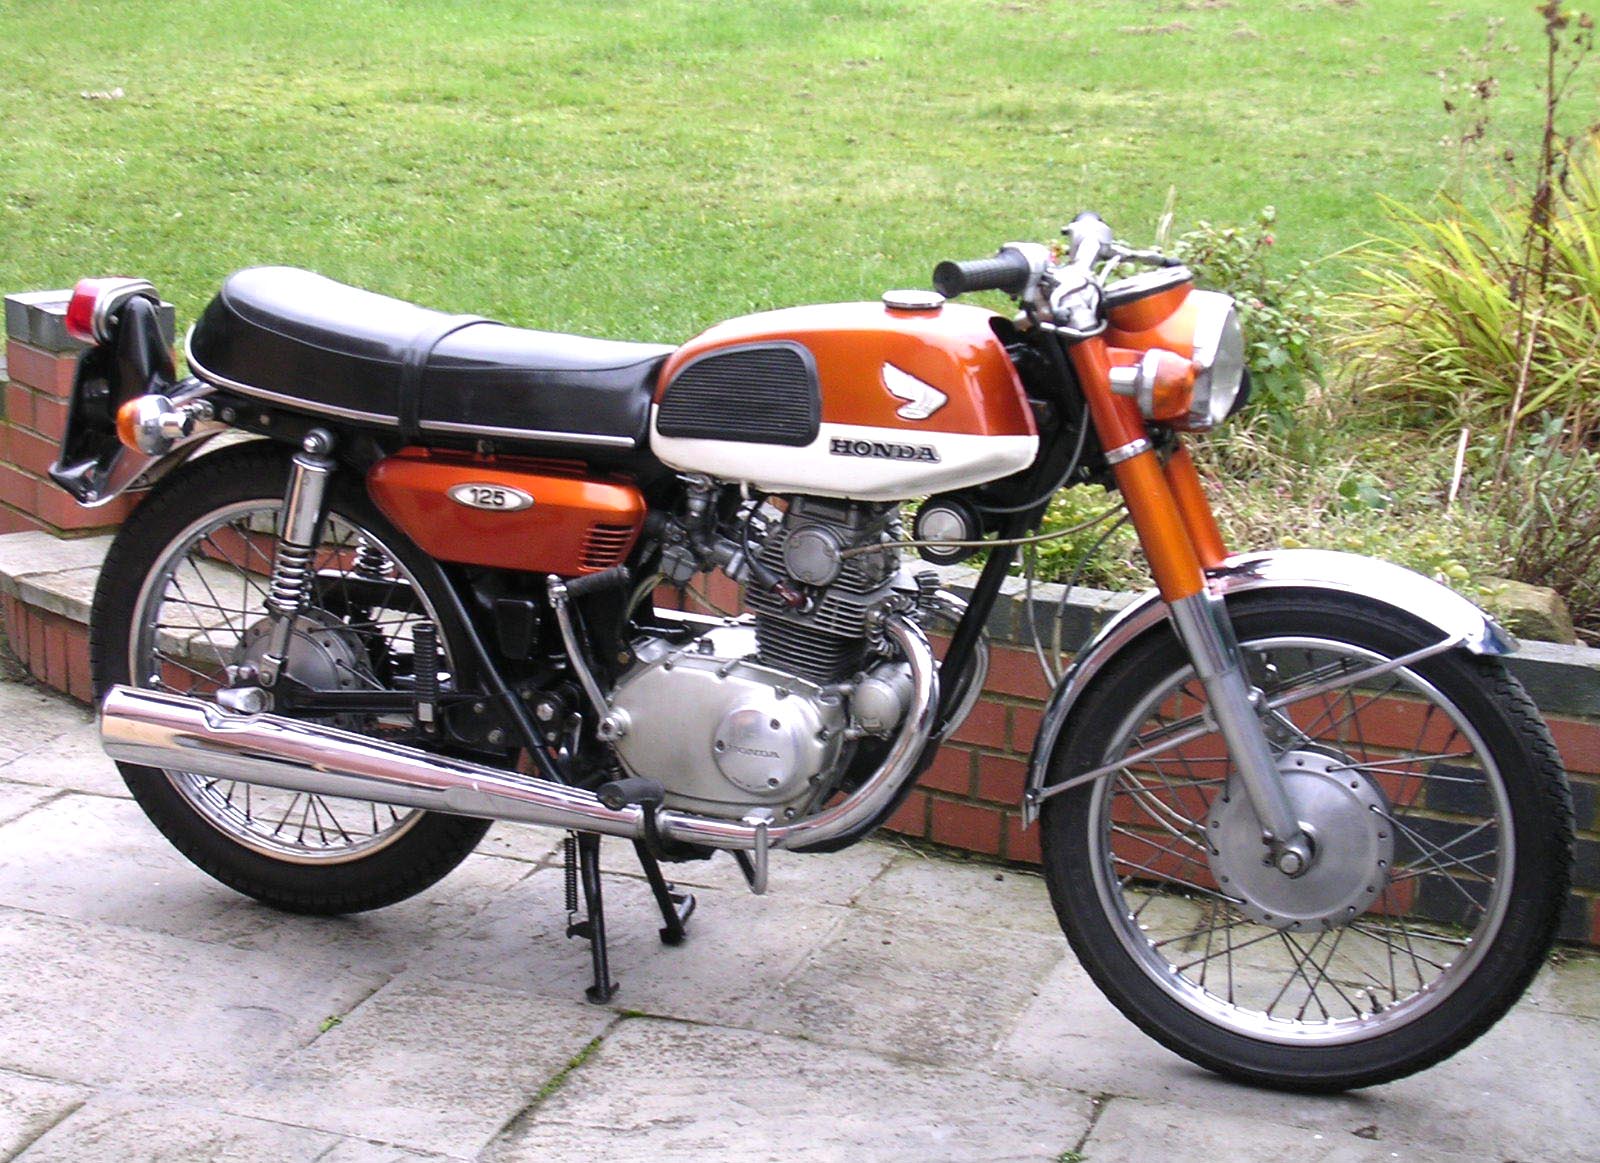 Honda CB125 Twin Spesifikasi